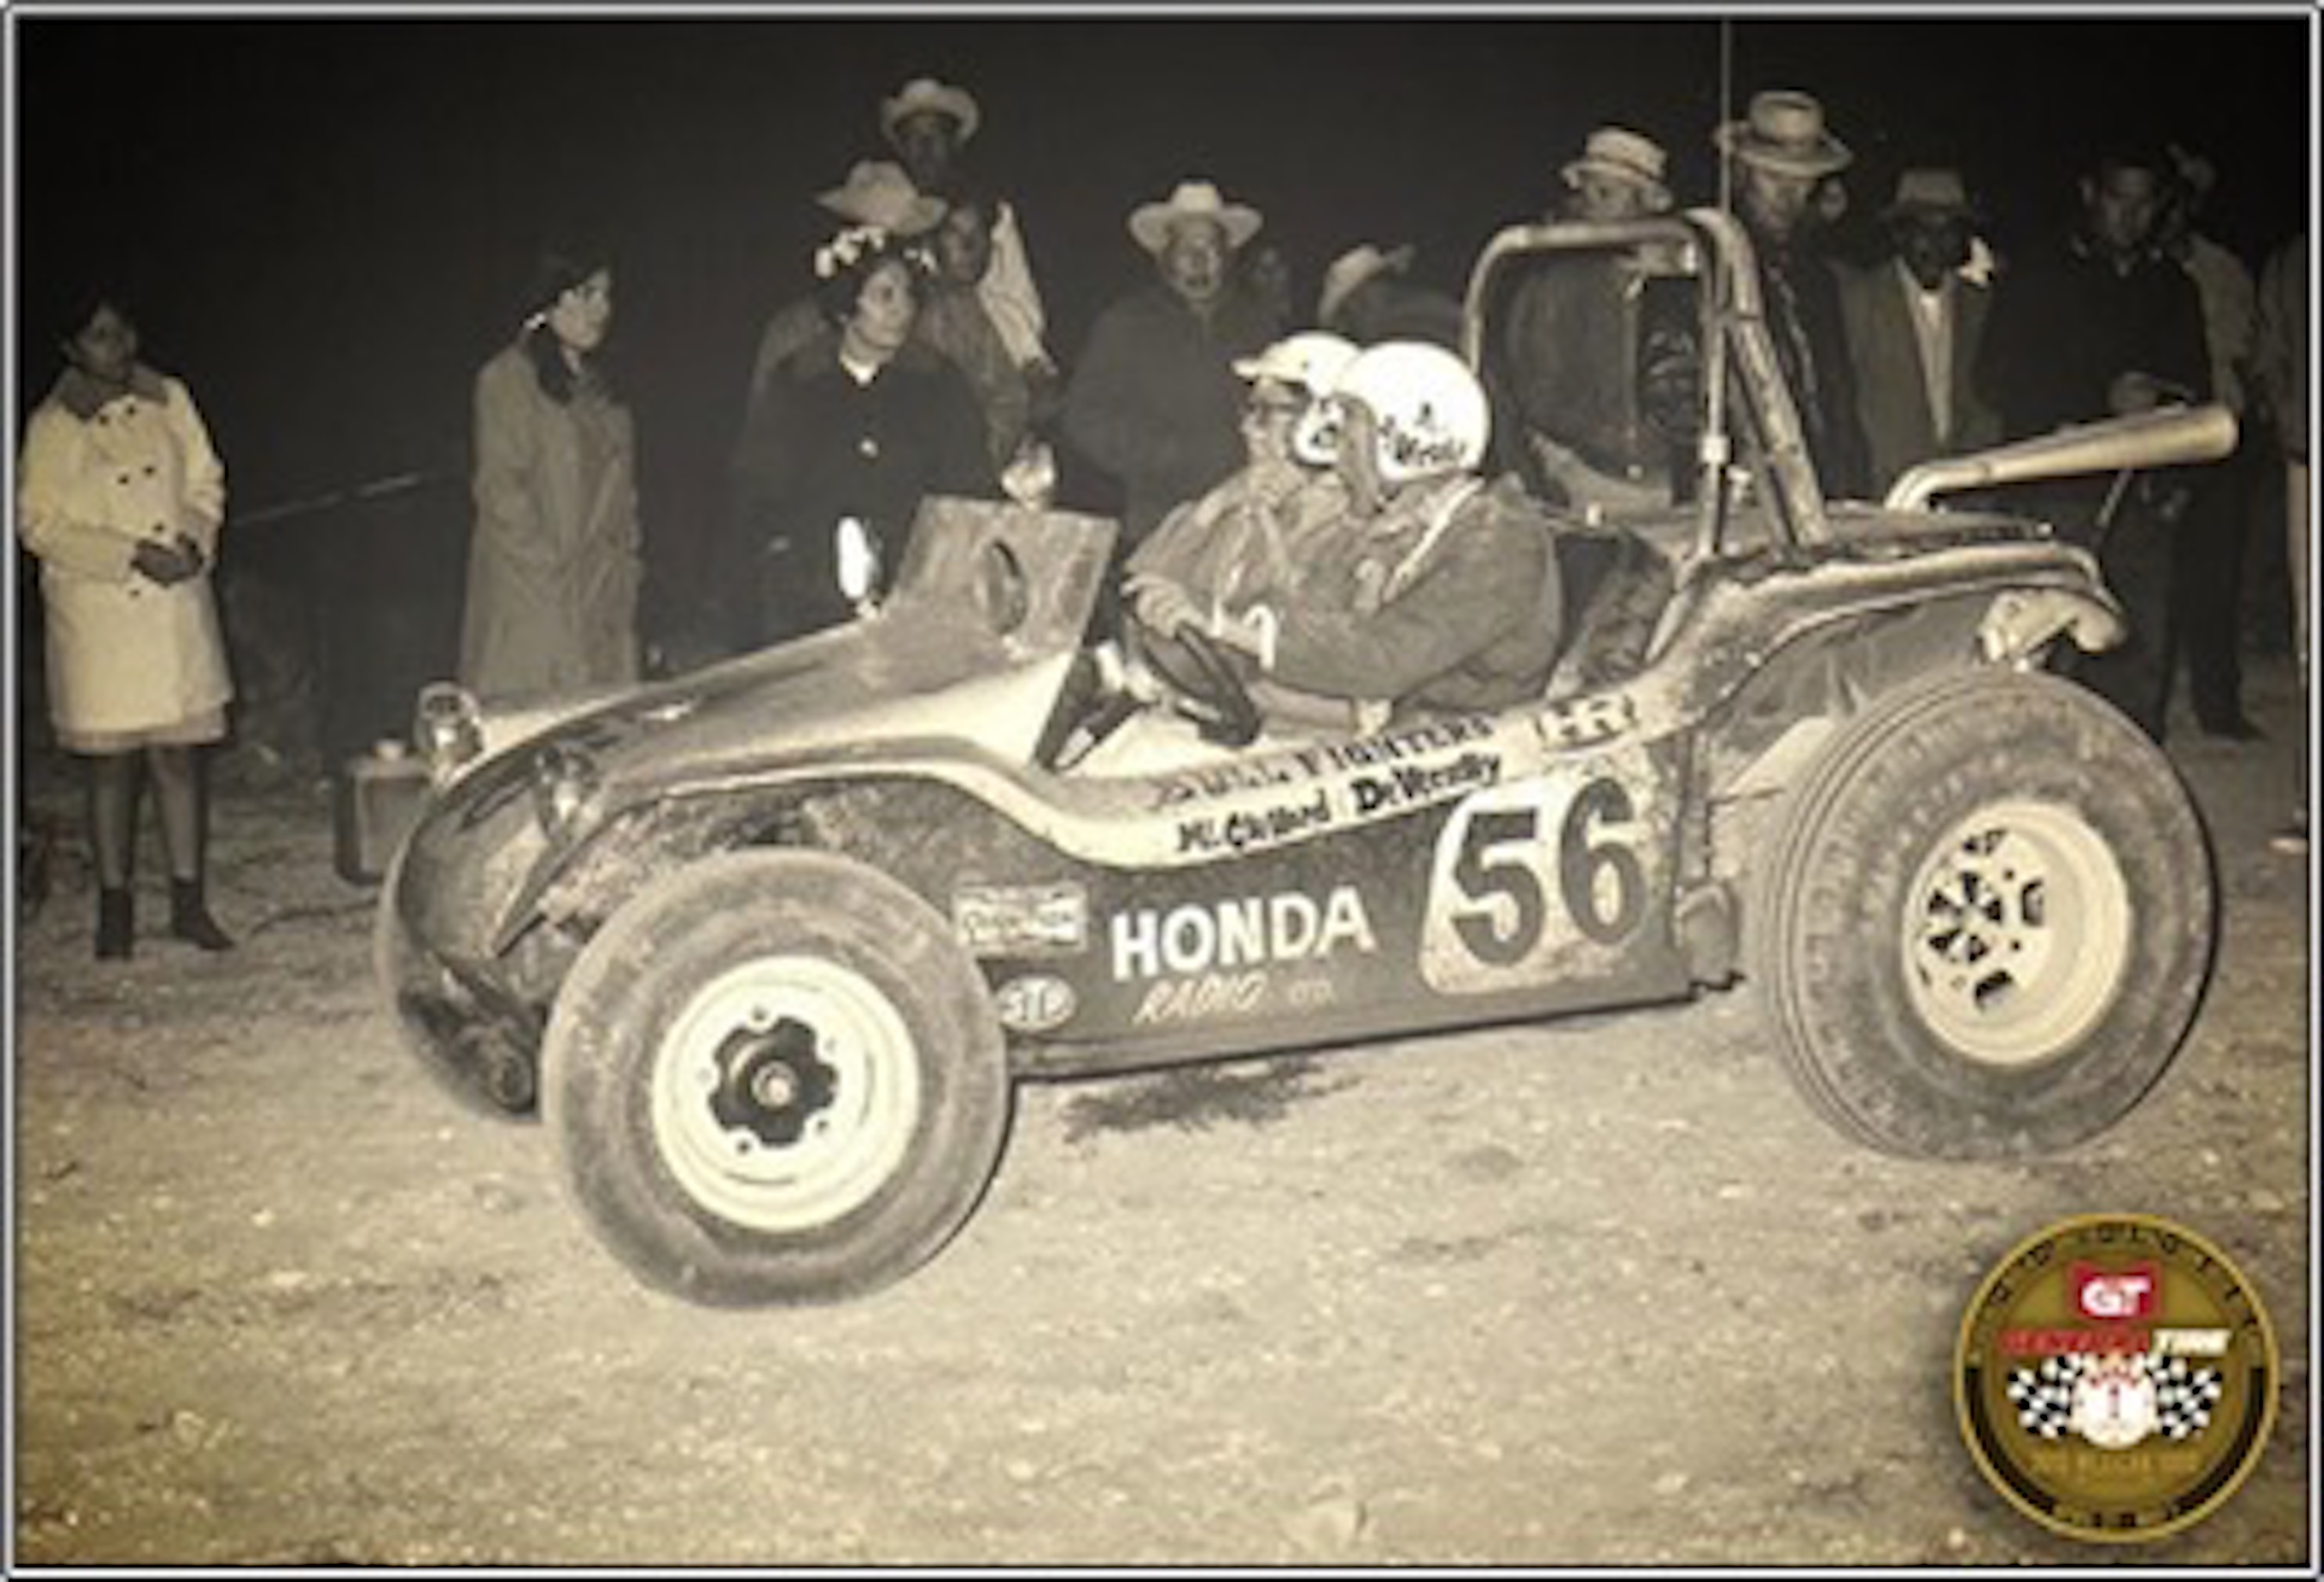 Muestra de cómo lucían los pilotos y vehículo off-road. Bullfighter-Buggy
para dunas manejado por Andy DeVercelly Jr. y Tom McClelland, en la carrera
Norra mexicana 1000, en 1968